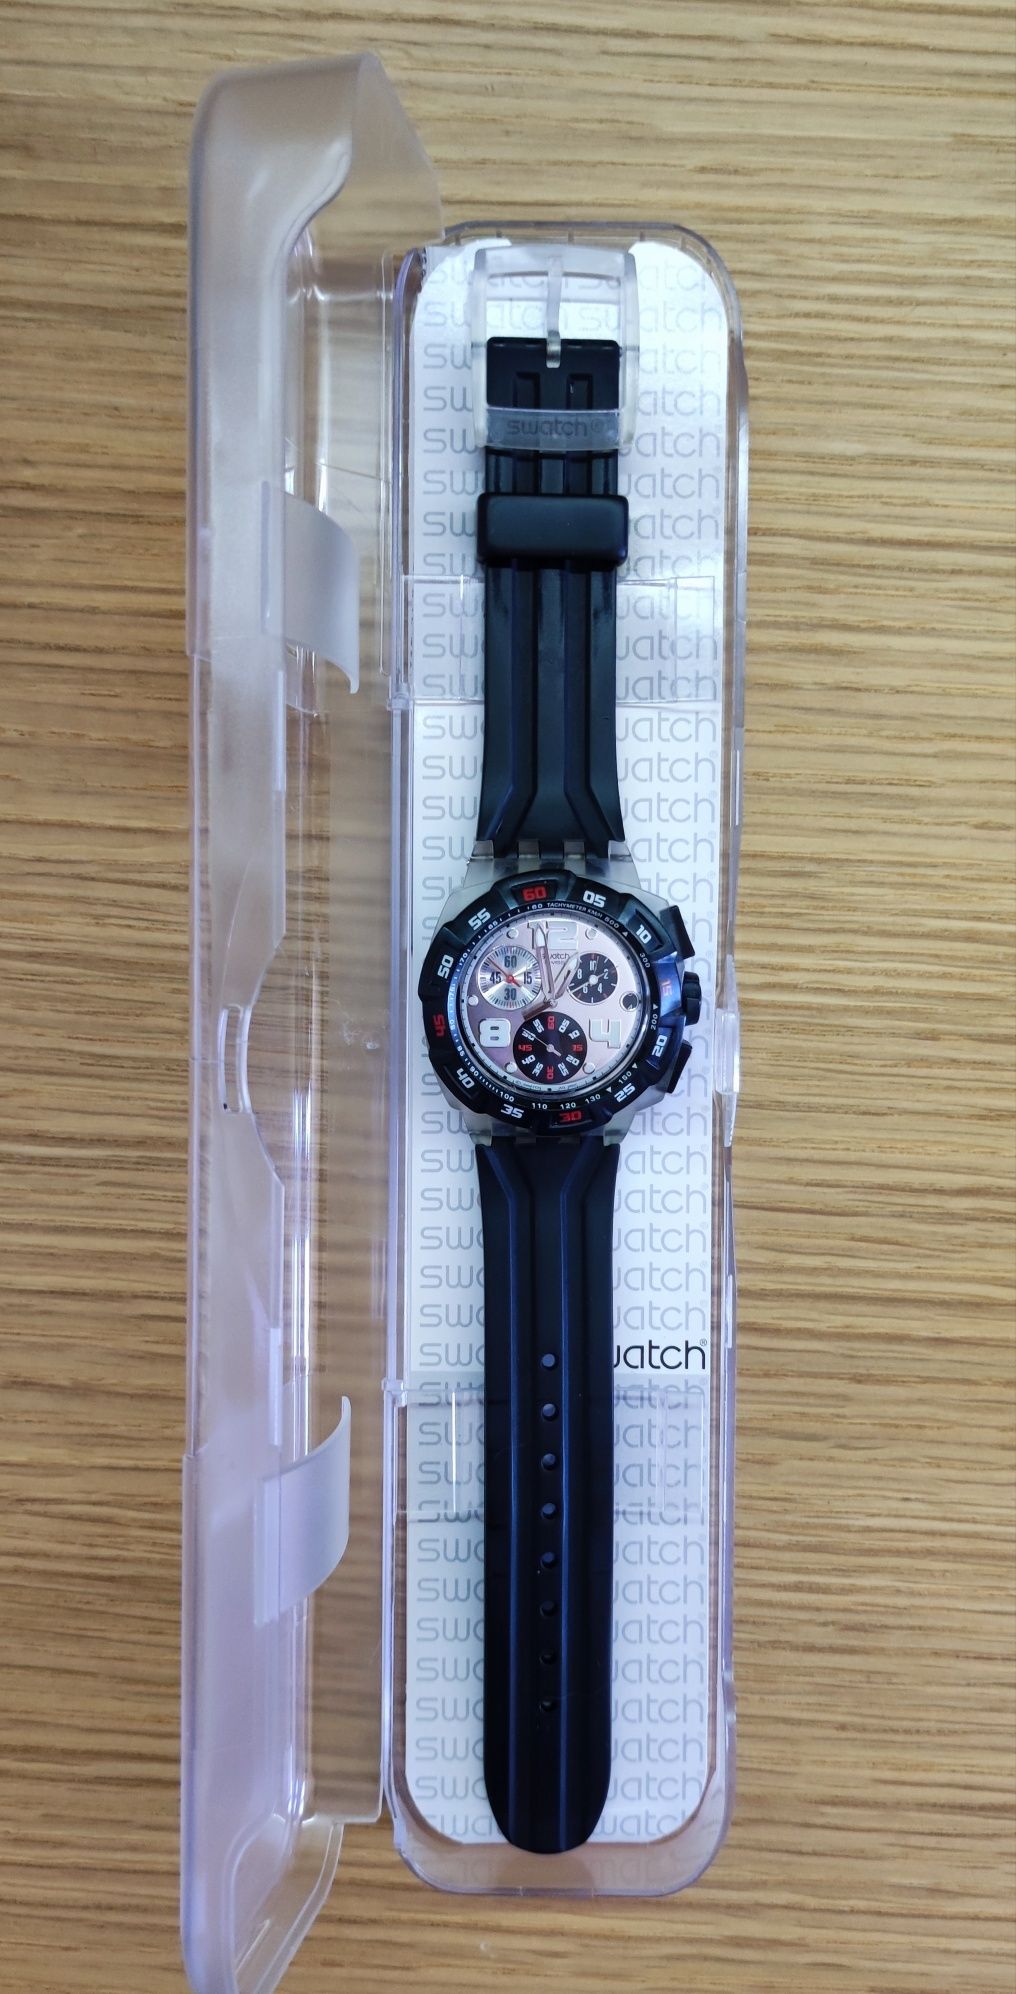 Relógio Swatch SUIK400 Original